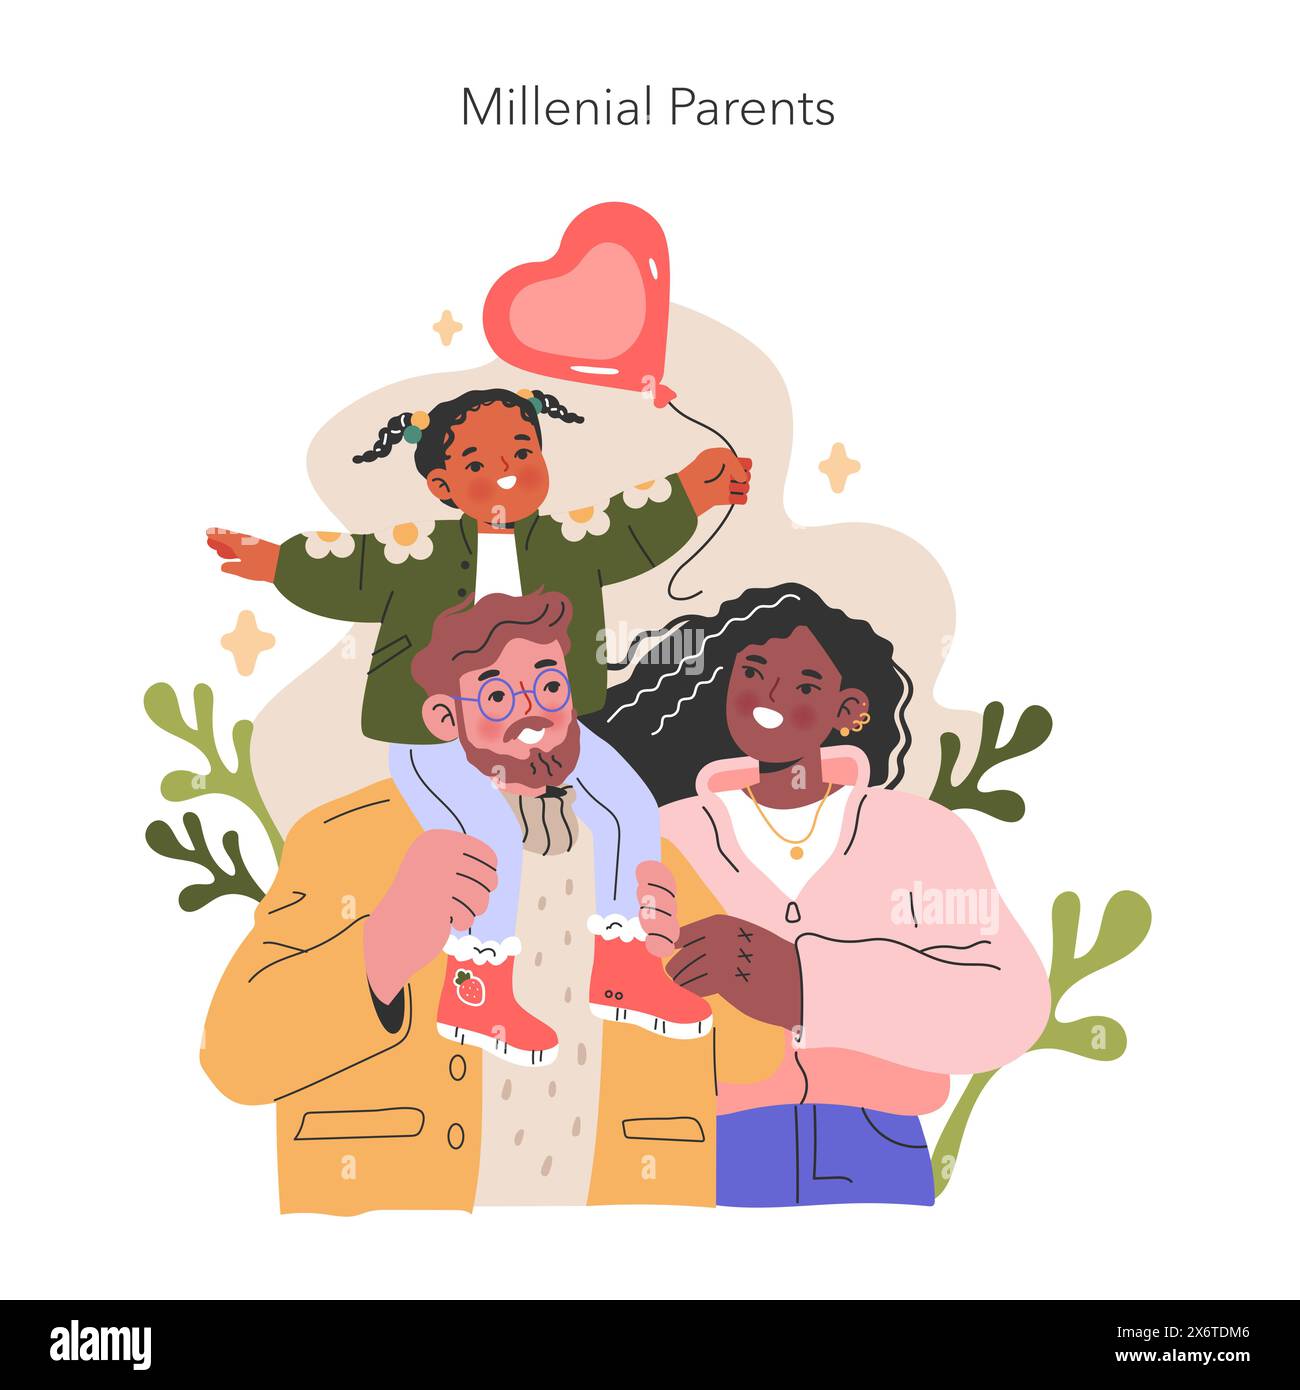 Illustration der Millennials Eltern. Fängt einen herzerwärmenden Moment mit einem Kind und seinen fröhlichen Eltern ein und symbolisiert Liebe und Familienbande. Vektorabbildung. Stock Vektor